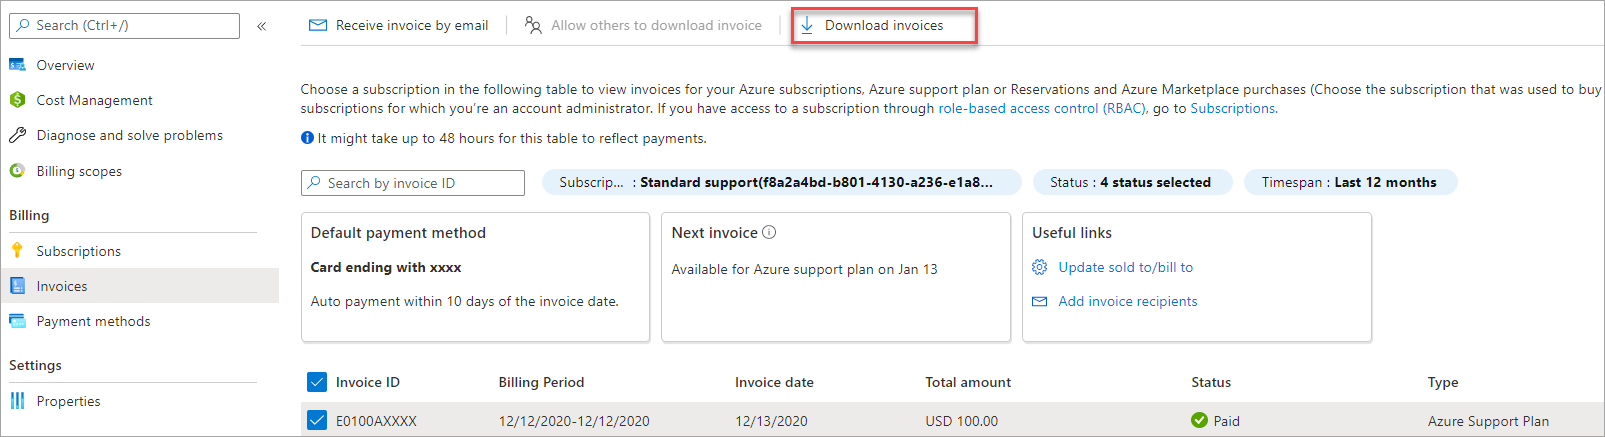 Captura de tela que mostra a opção de download de uma fatura de plano de suporte M O S P.